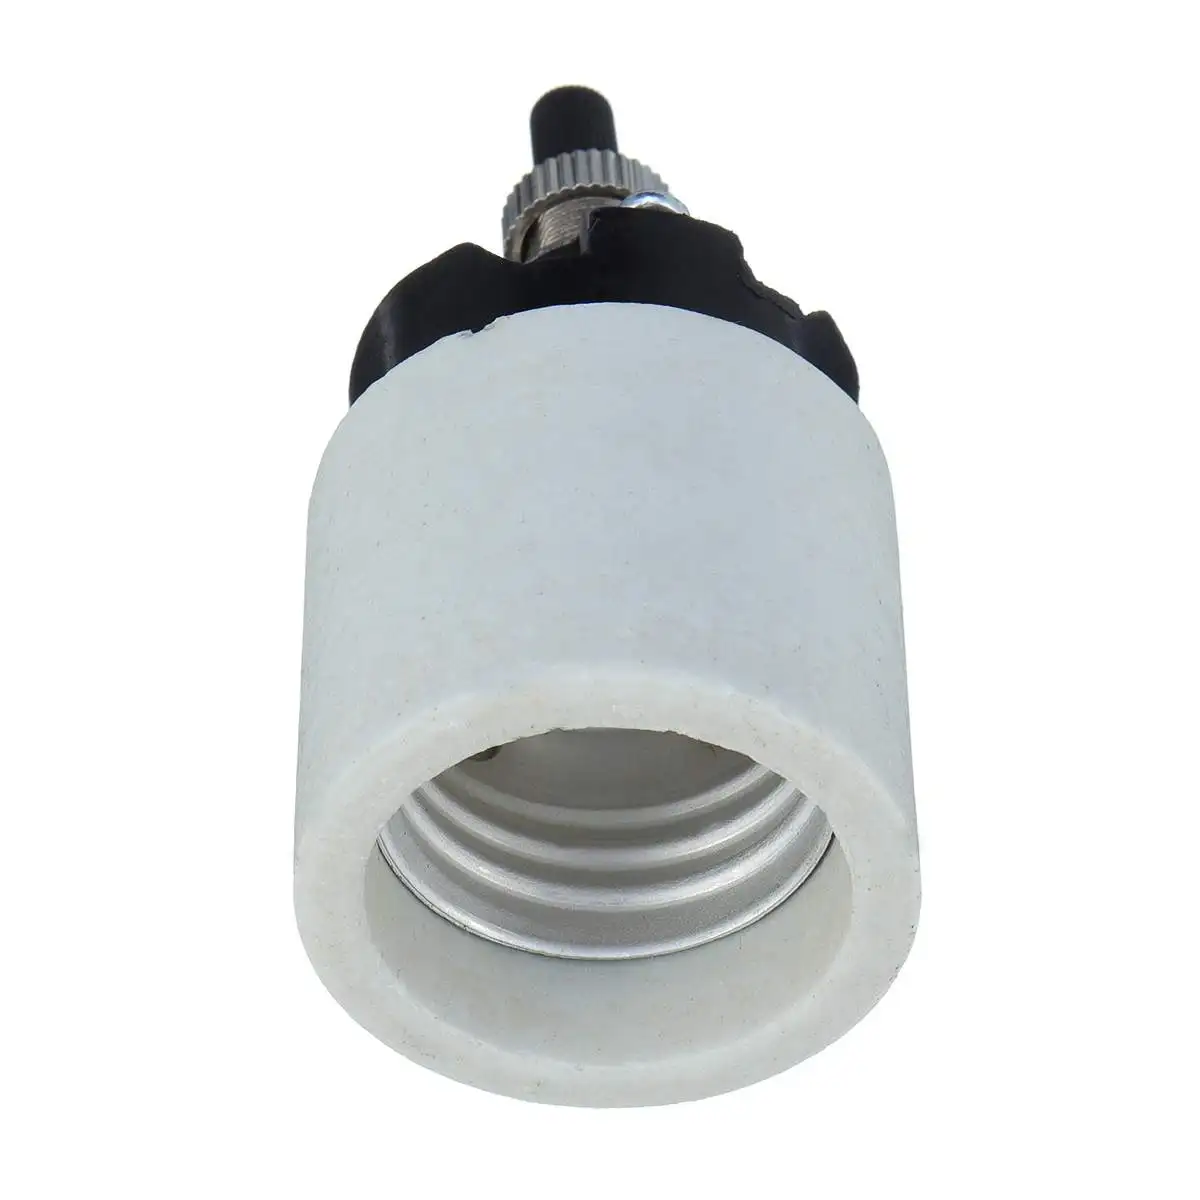 E26 660 Вт фарфоровая керамическая Поворотная фара светильник в розетку адаптер с ручкой переключатель патрон для лампы потолочный